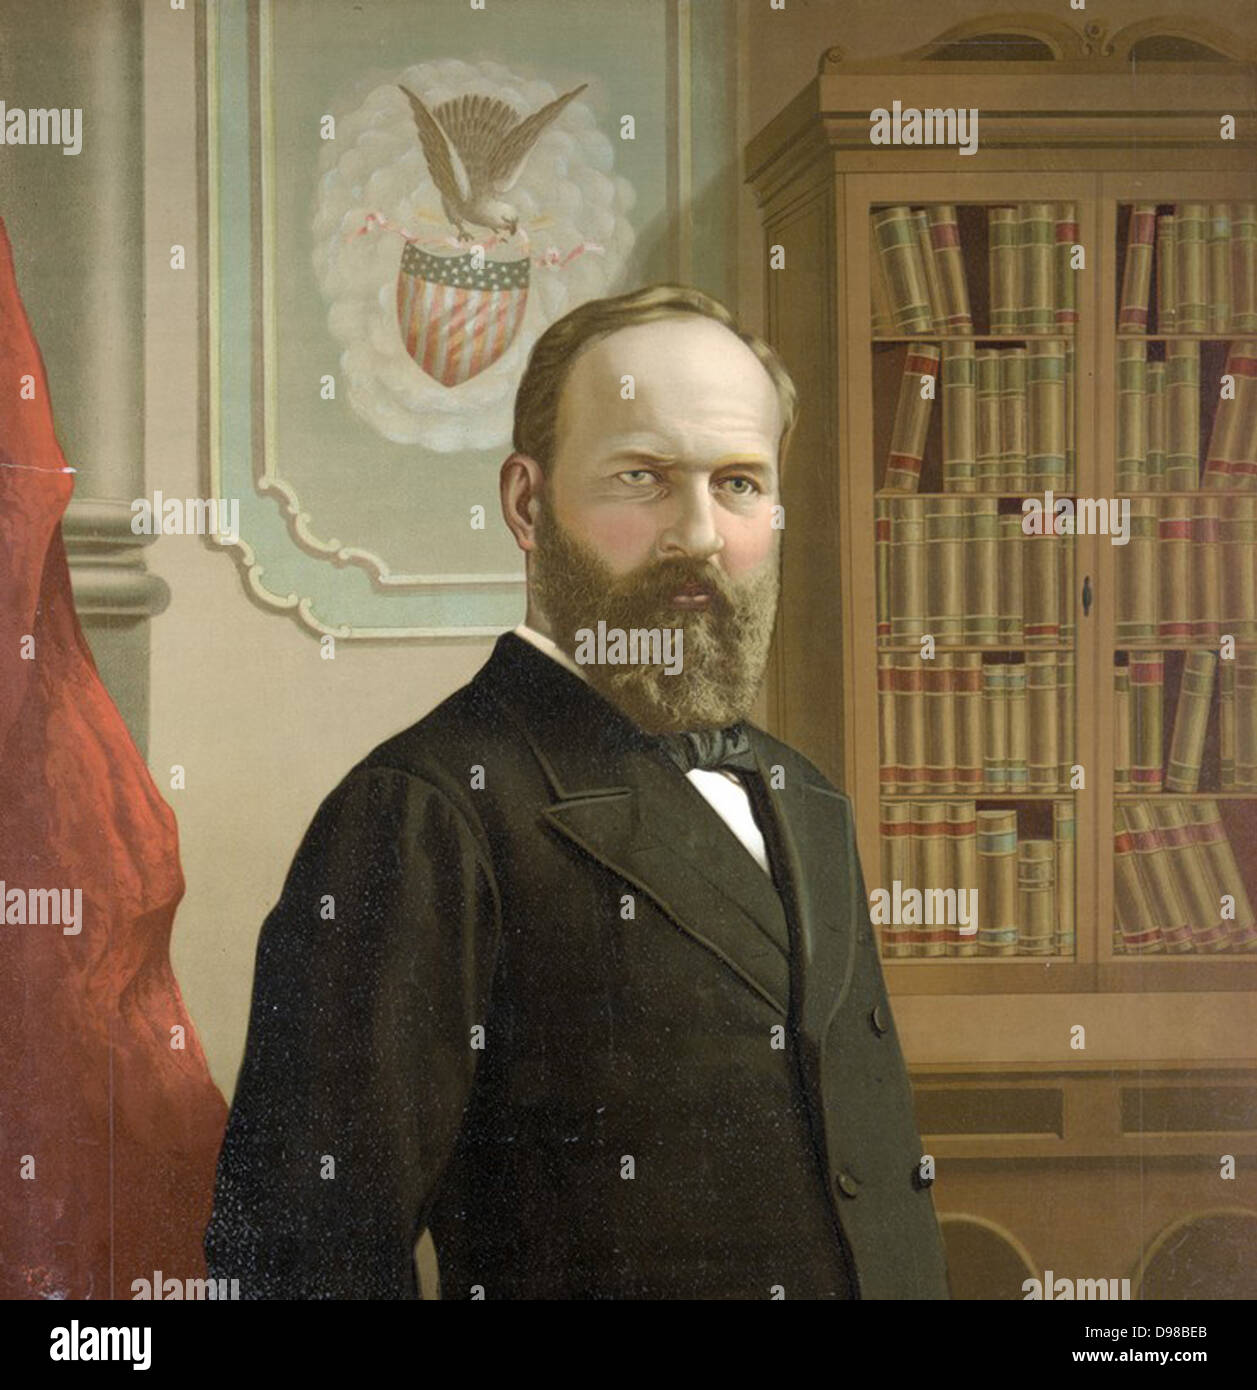 James Abram Garfield (1831-1891), einem Rebublican, 20. Präsident der Vereinigten Staaten von Amerika 1891. Schuss am 2. Juli, der seine Wunden am 19. September starb durch Charles J Guiteau. Brustbild von Garfield. Stockfoto